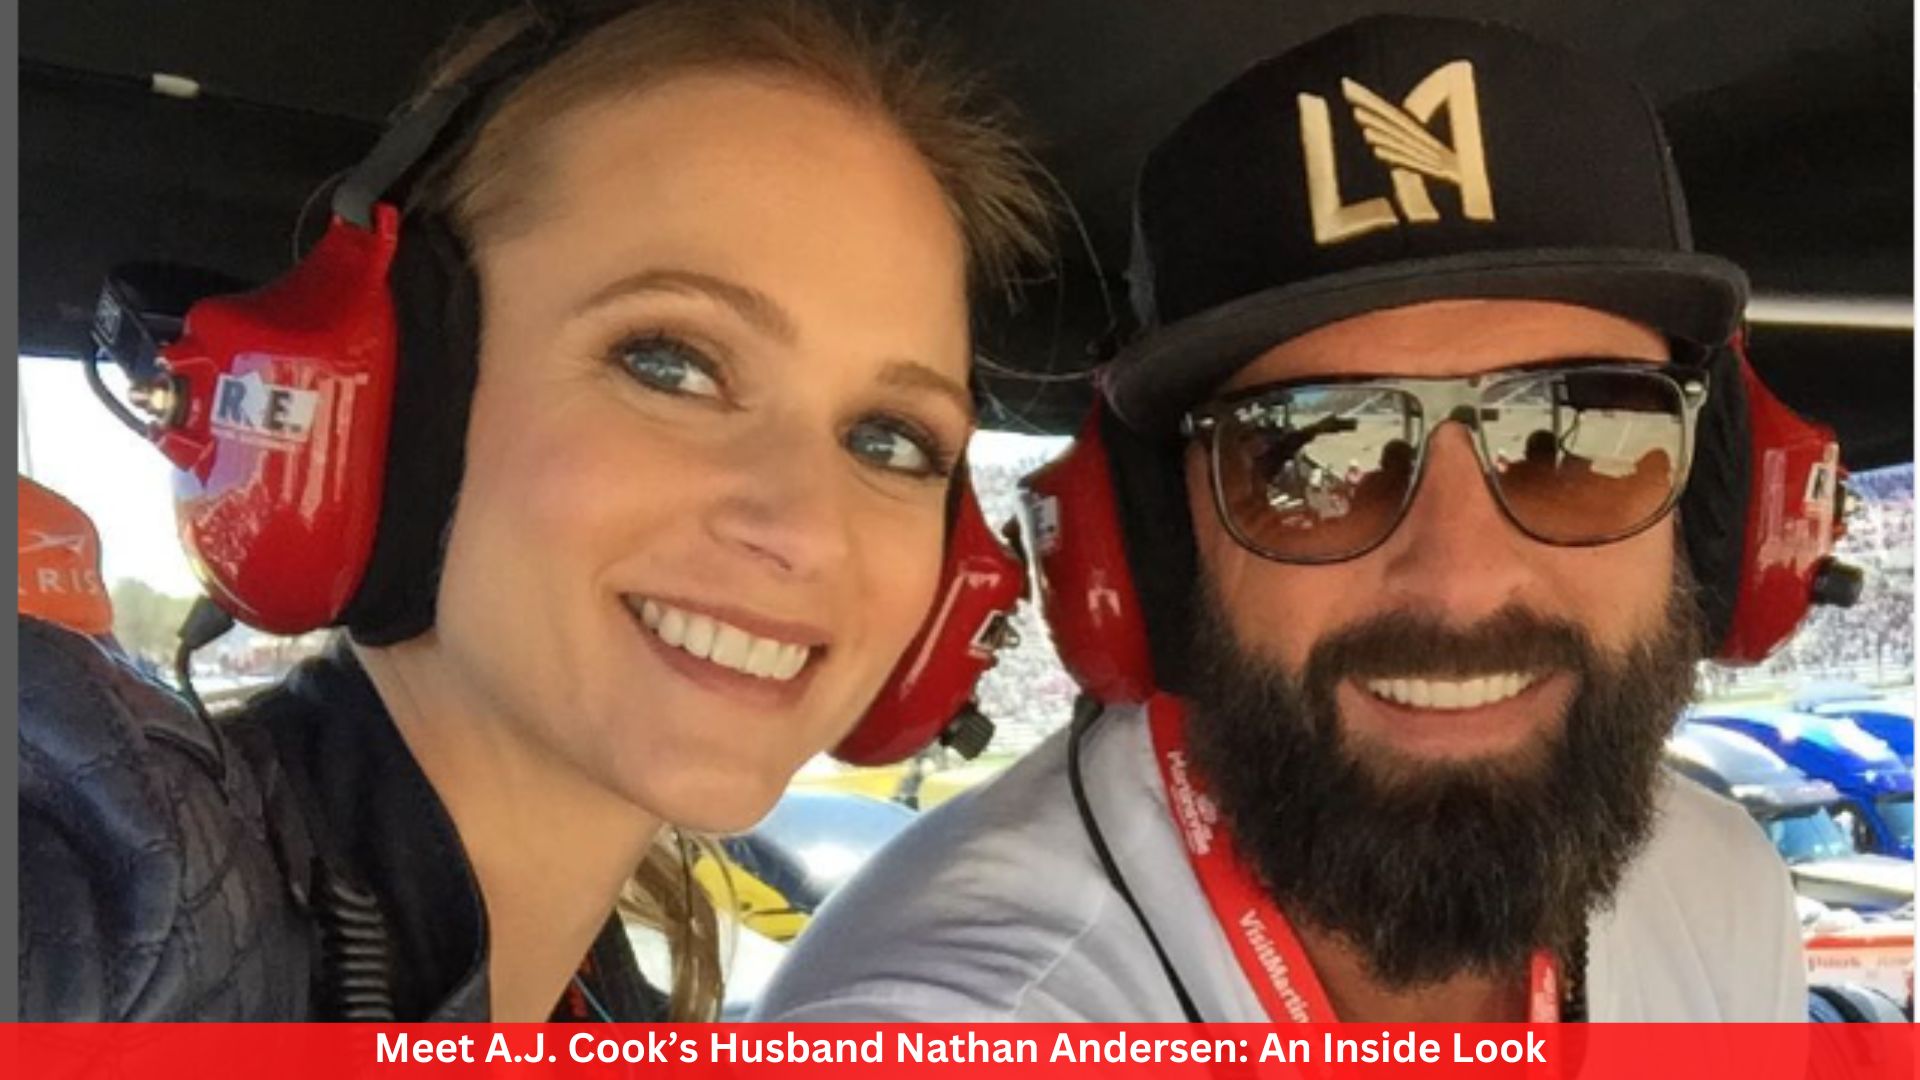 Meet A.J. Cook’s Husband Nathan Andersen: An Inside Look